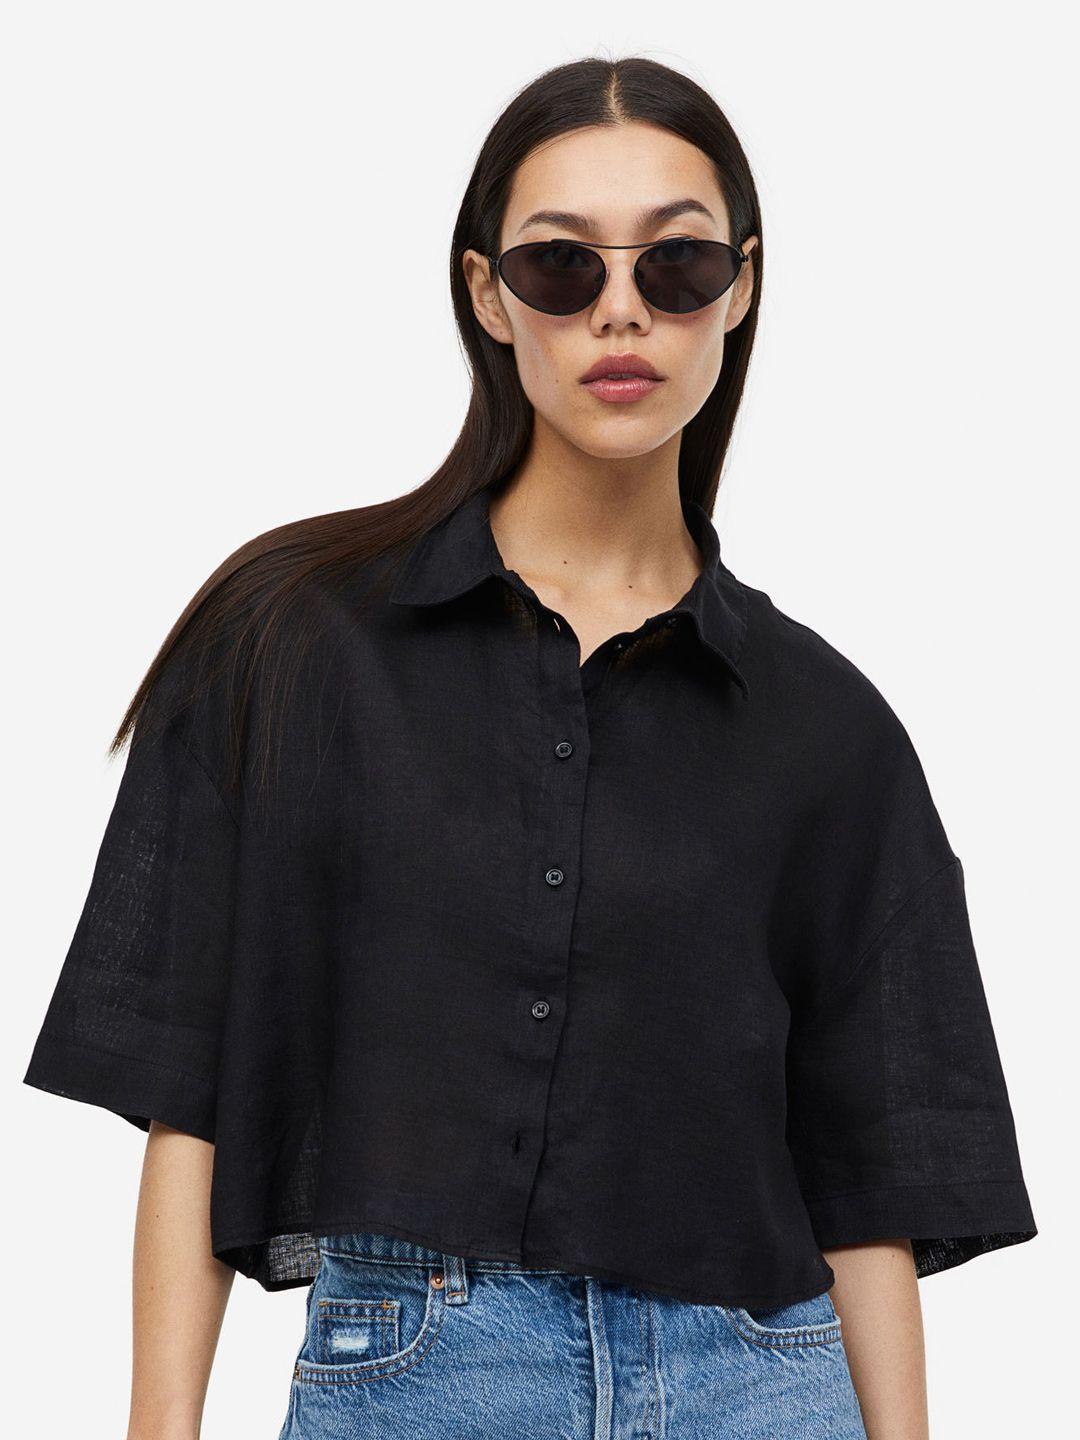 h&m women oversized linen shirt